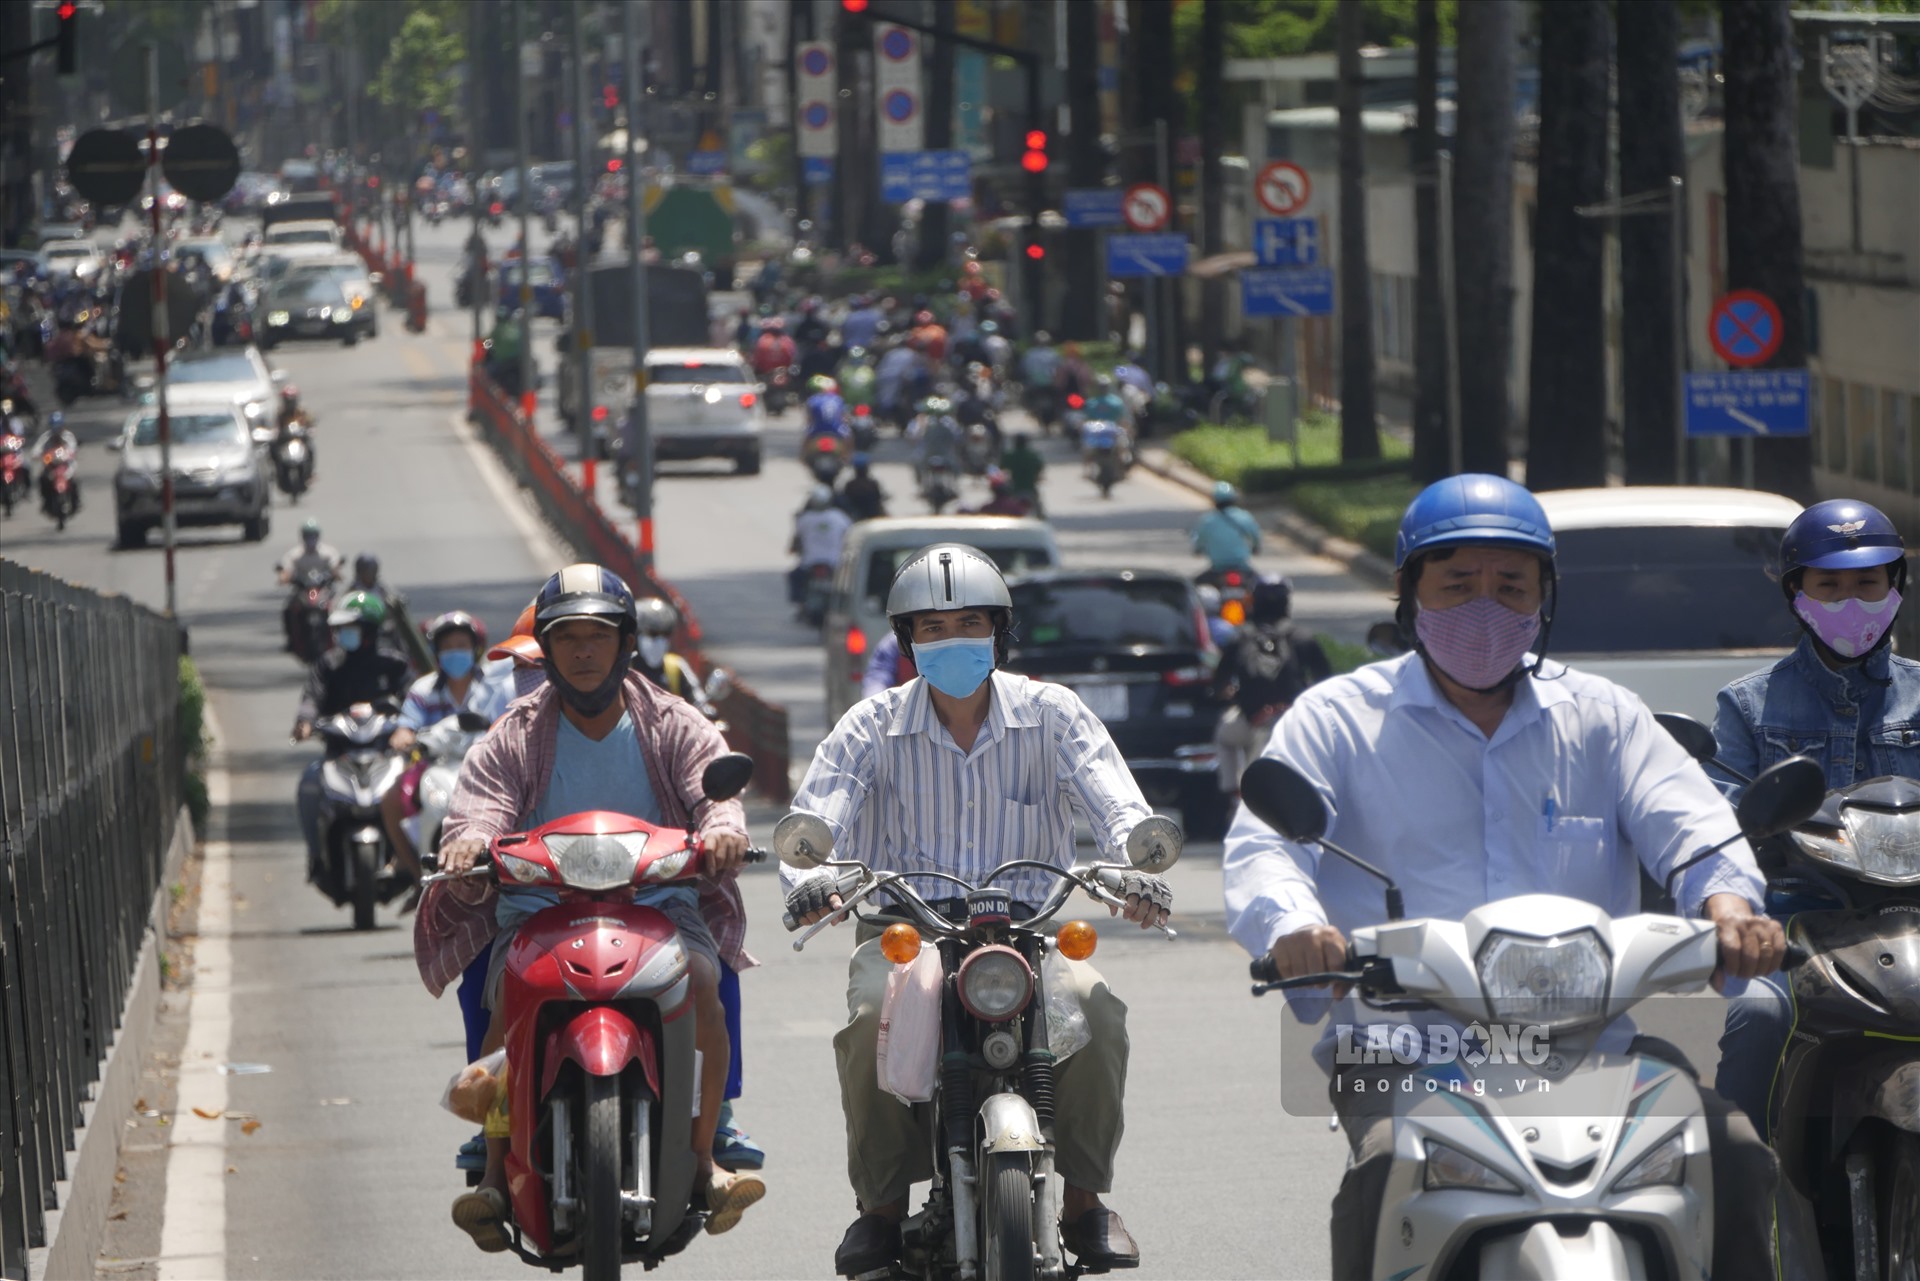 Cũng tương tự như các tuyến đường Võ Thị Sáu, Lý Thái Tổ, Nguyễn Thị Minh Khai... mật độ giao thông trên cầu vượt 3/2 - Nguyễn Tri Phương cũng ghi nhận tình trạng đông đúc.